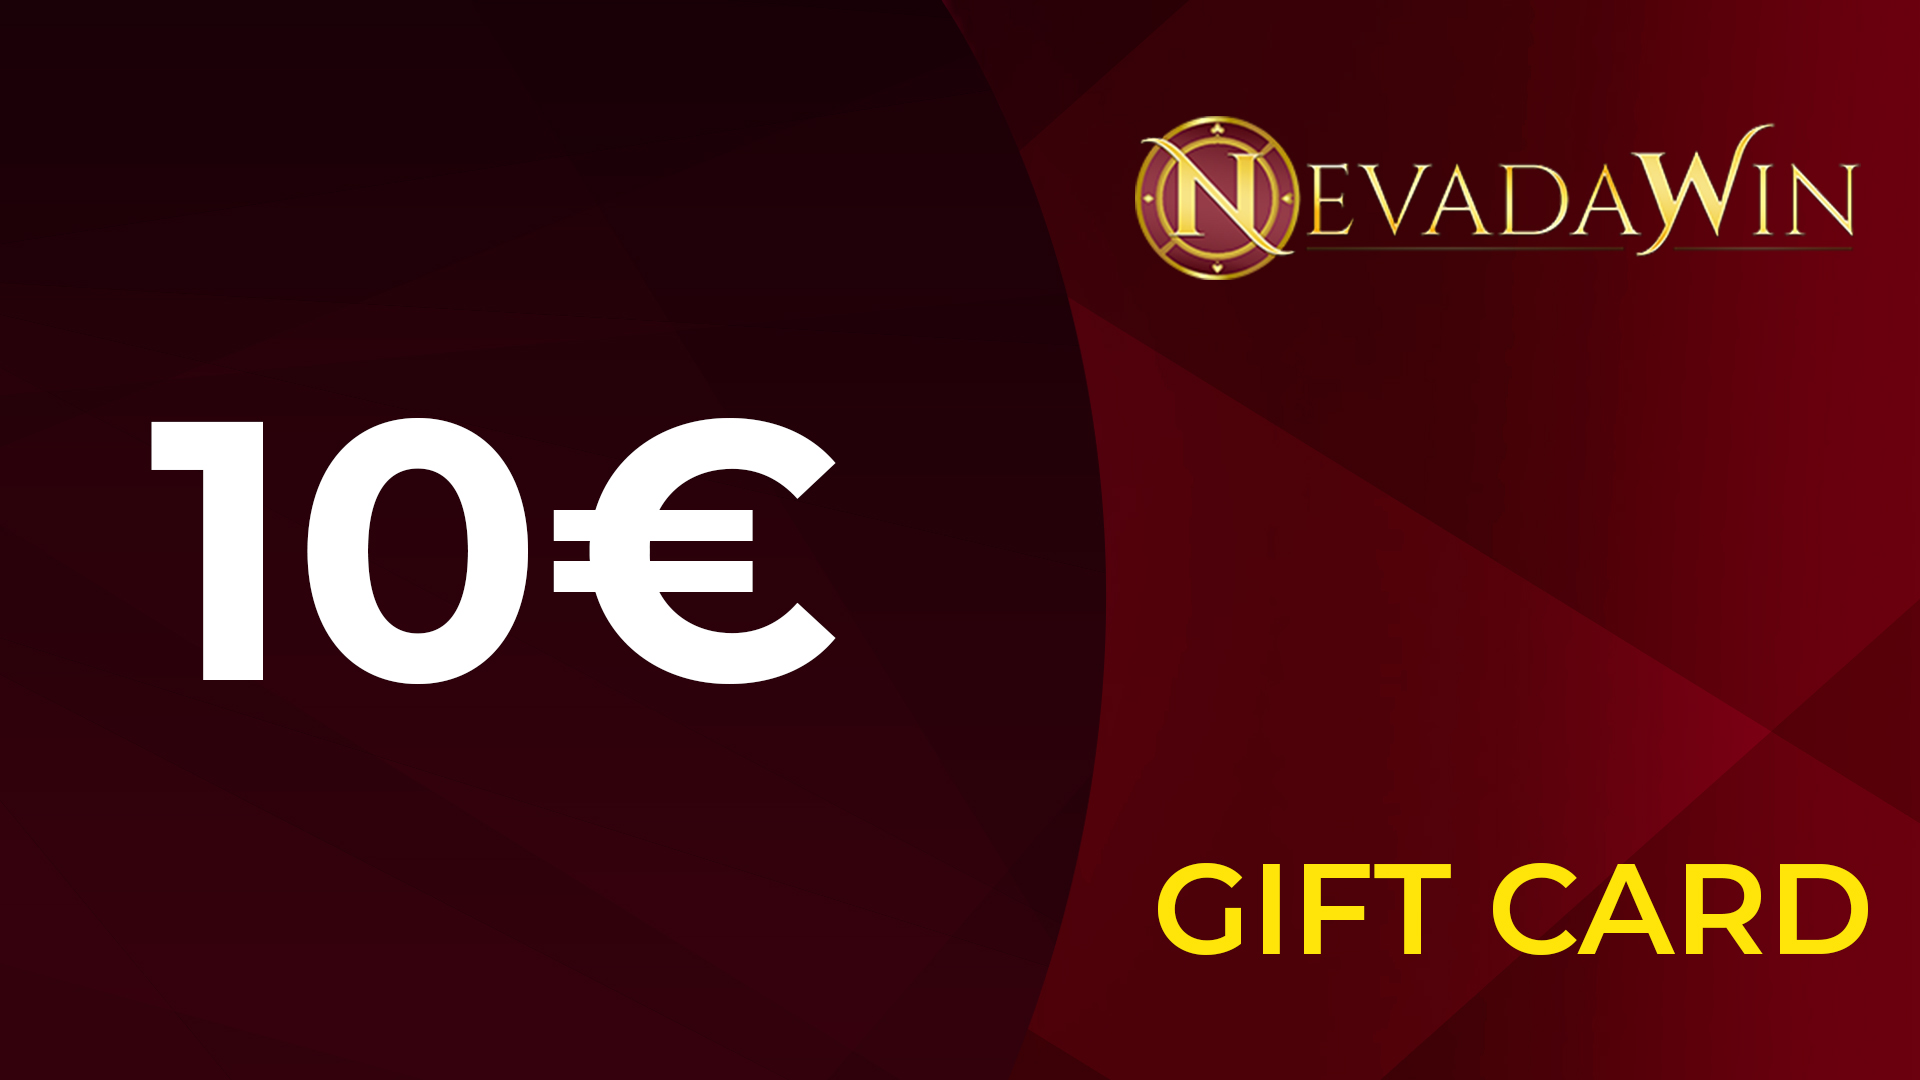 NevadaWin €10 Giftcard, 10.99 usd